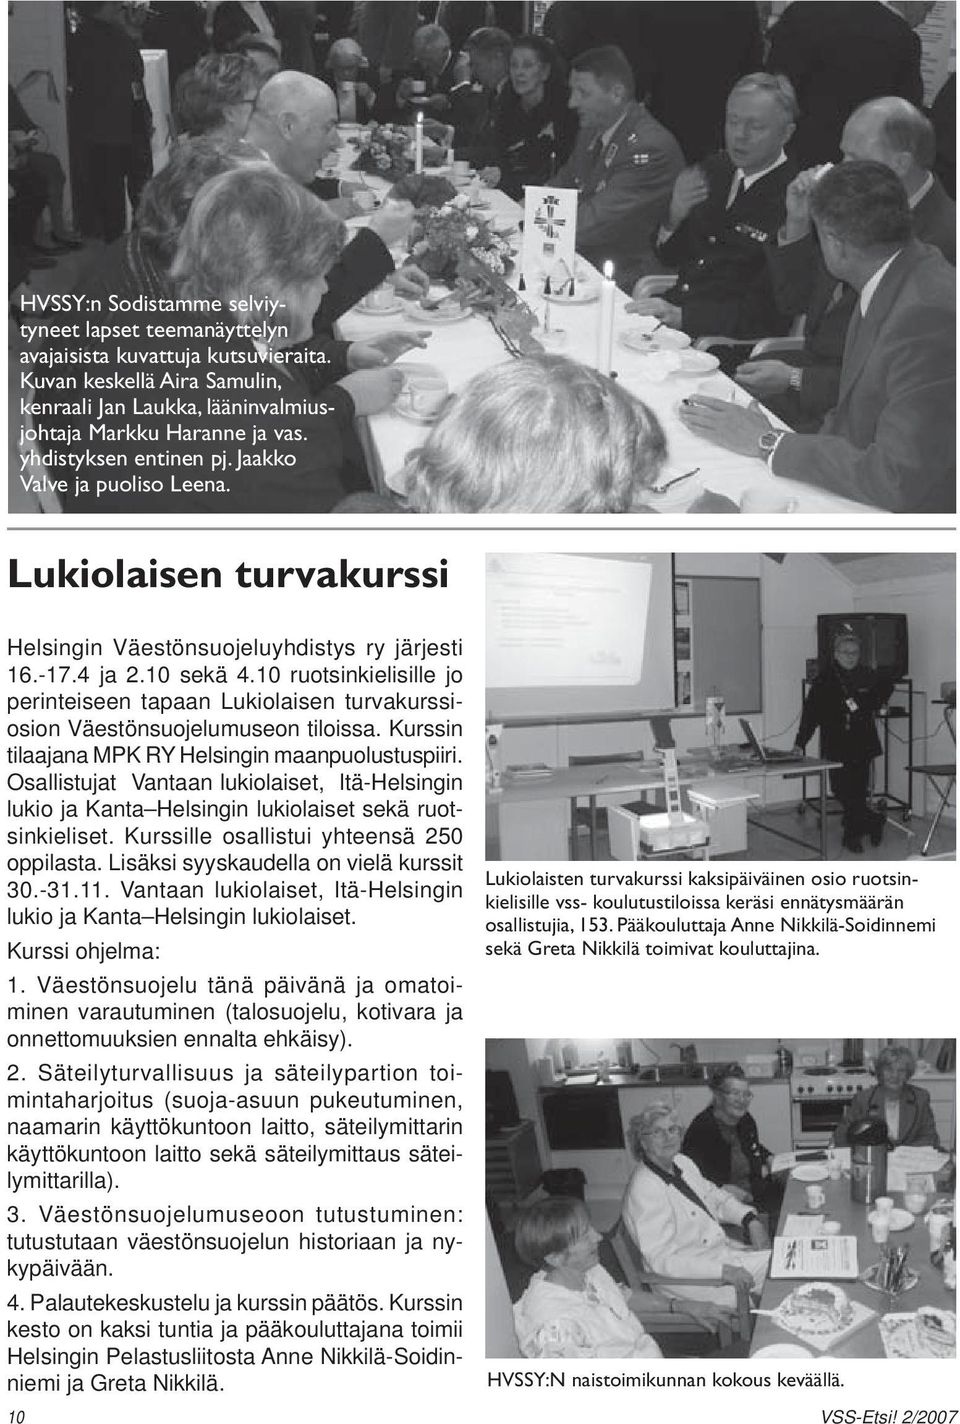 10 ruotsinkielisille jo perinteiseen tapaan Lukiolaisen turvakurssiosion Väestönsuojelumuseon tiloissa. Kurssin tilaajana MPK RY Helsingin maanpuolustuspiiri.